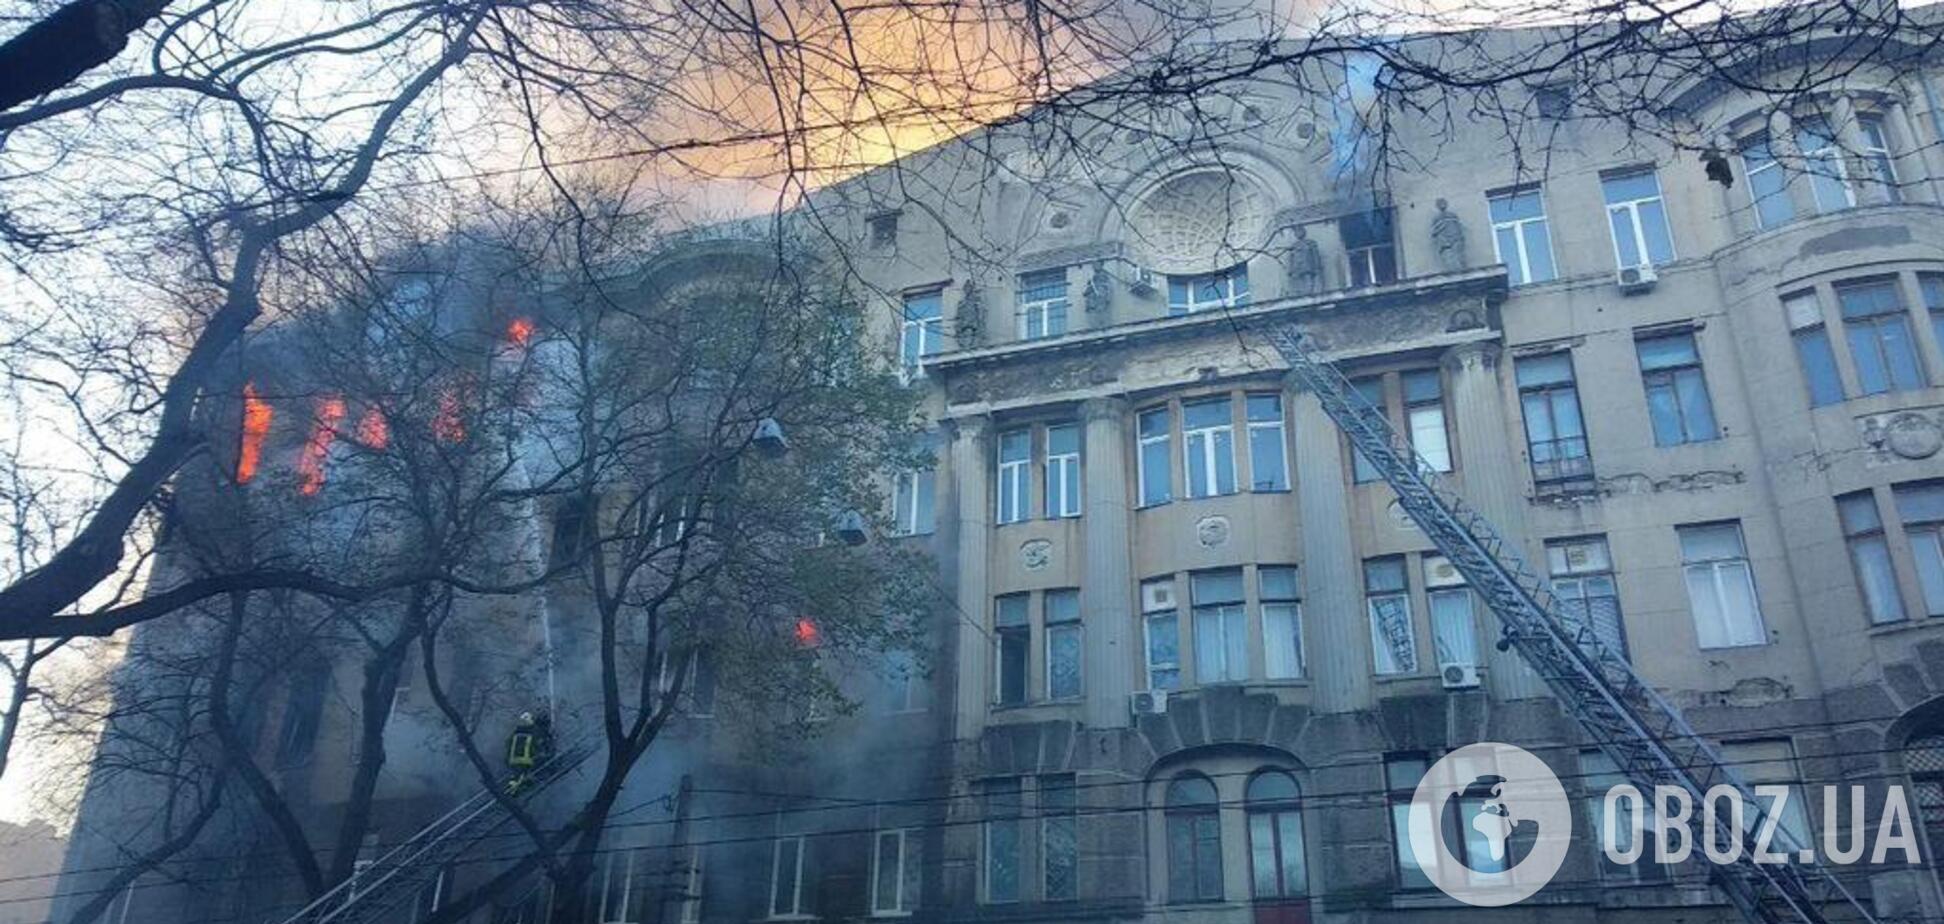 'Господи, врятуй усіх!' Студентка, що вижила, розповіла страшні подробиці про пожежу в Одесі